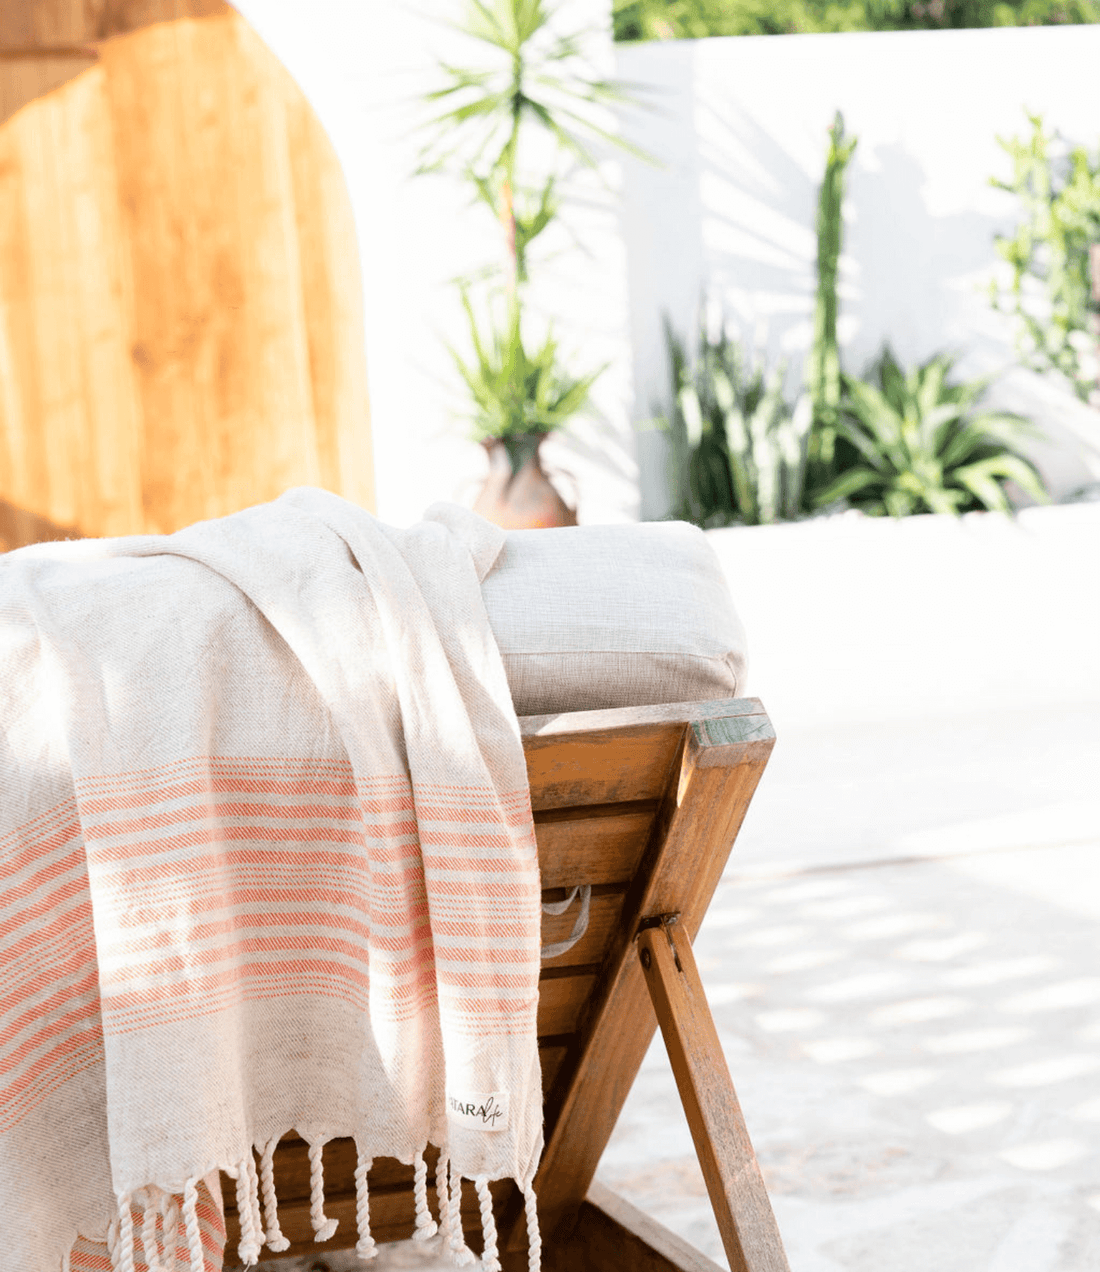 "Kas" Linen/Cotton peshtemal draped over sun lounge